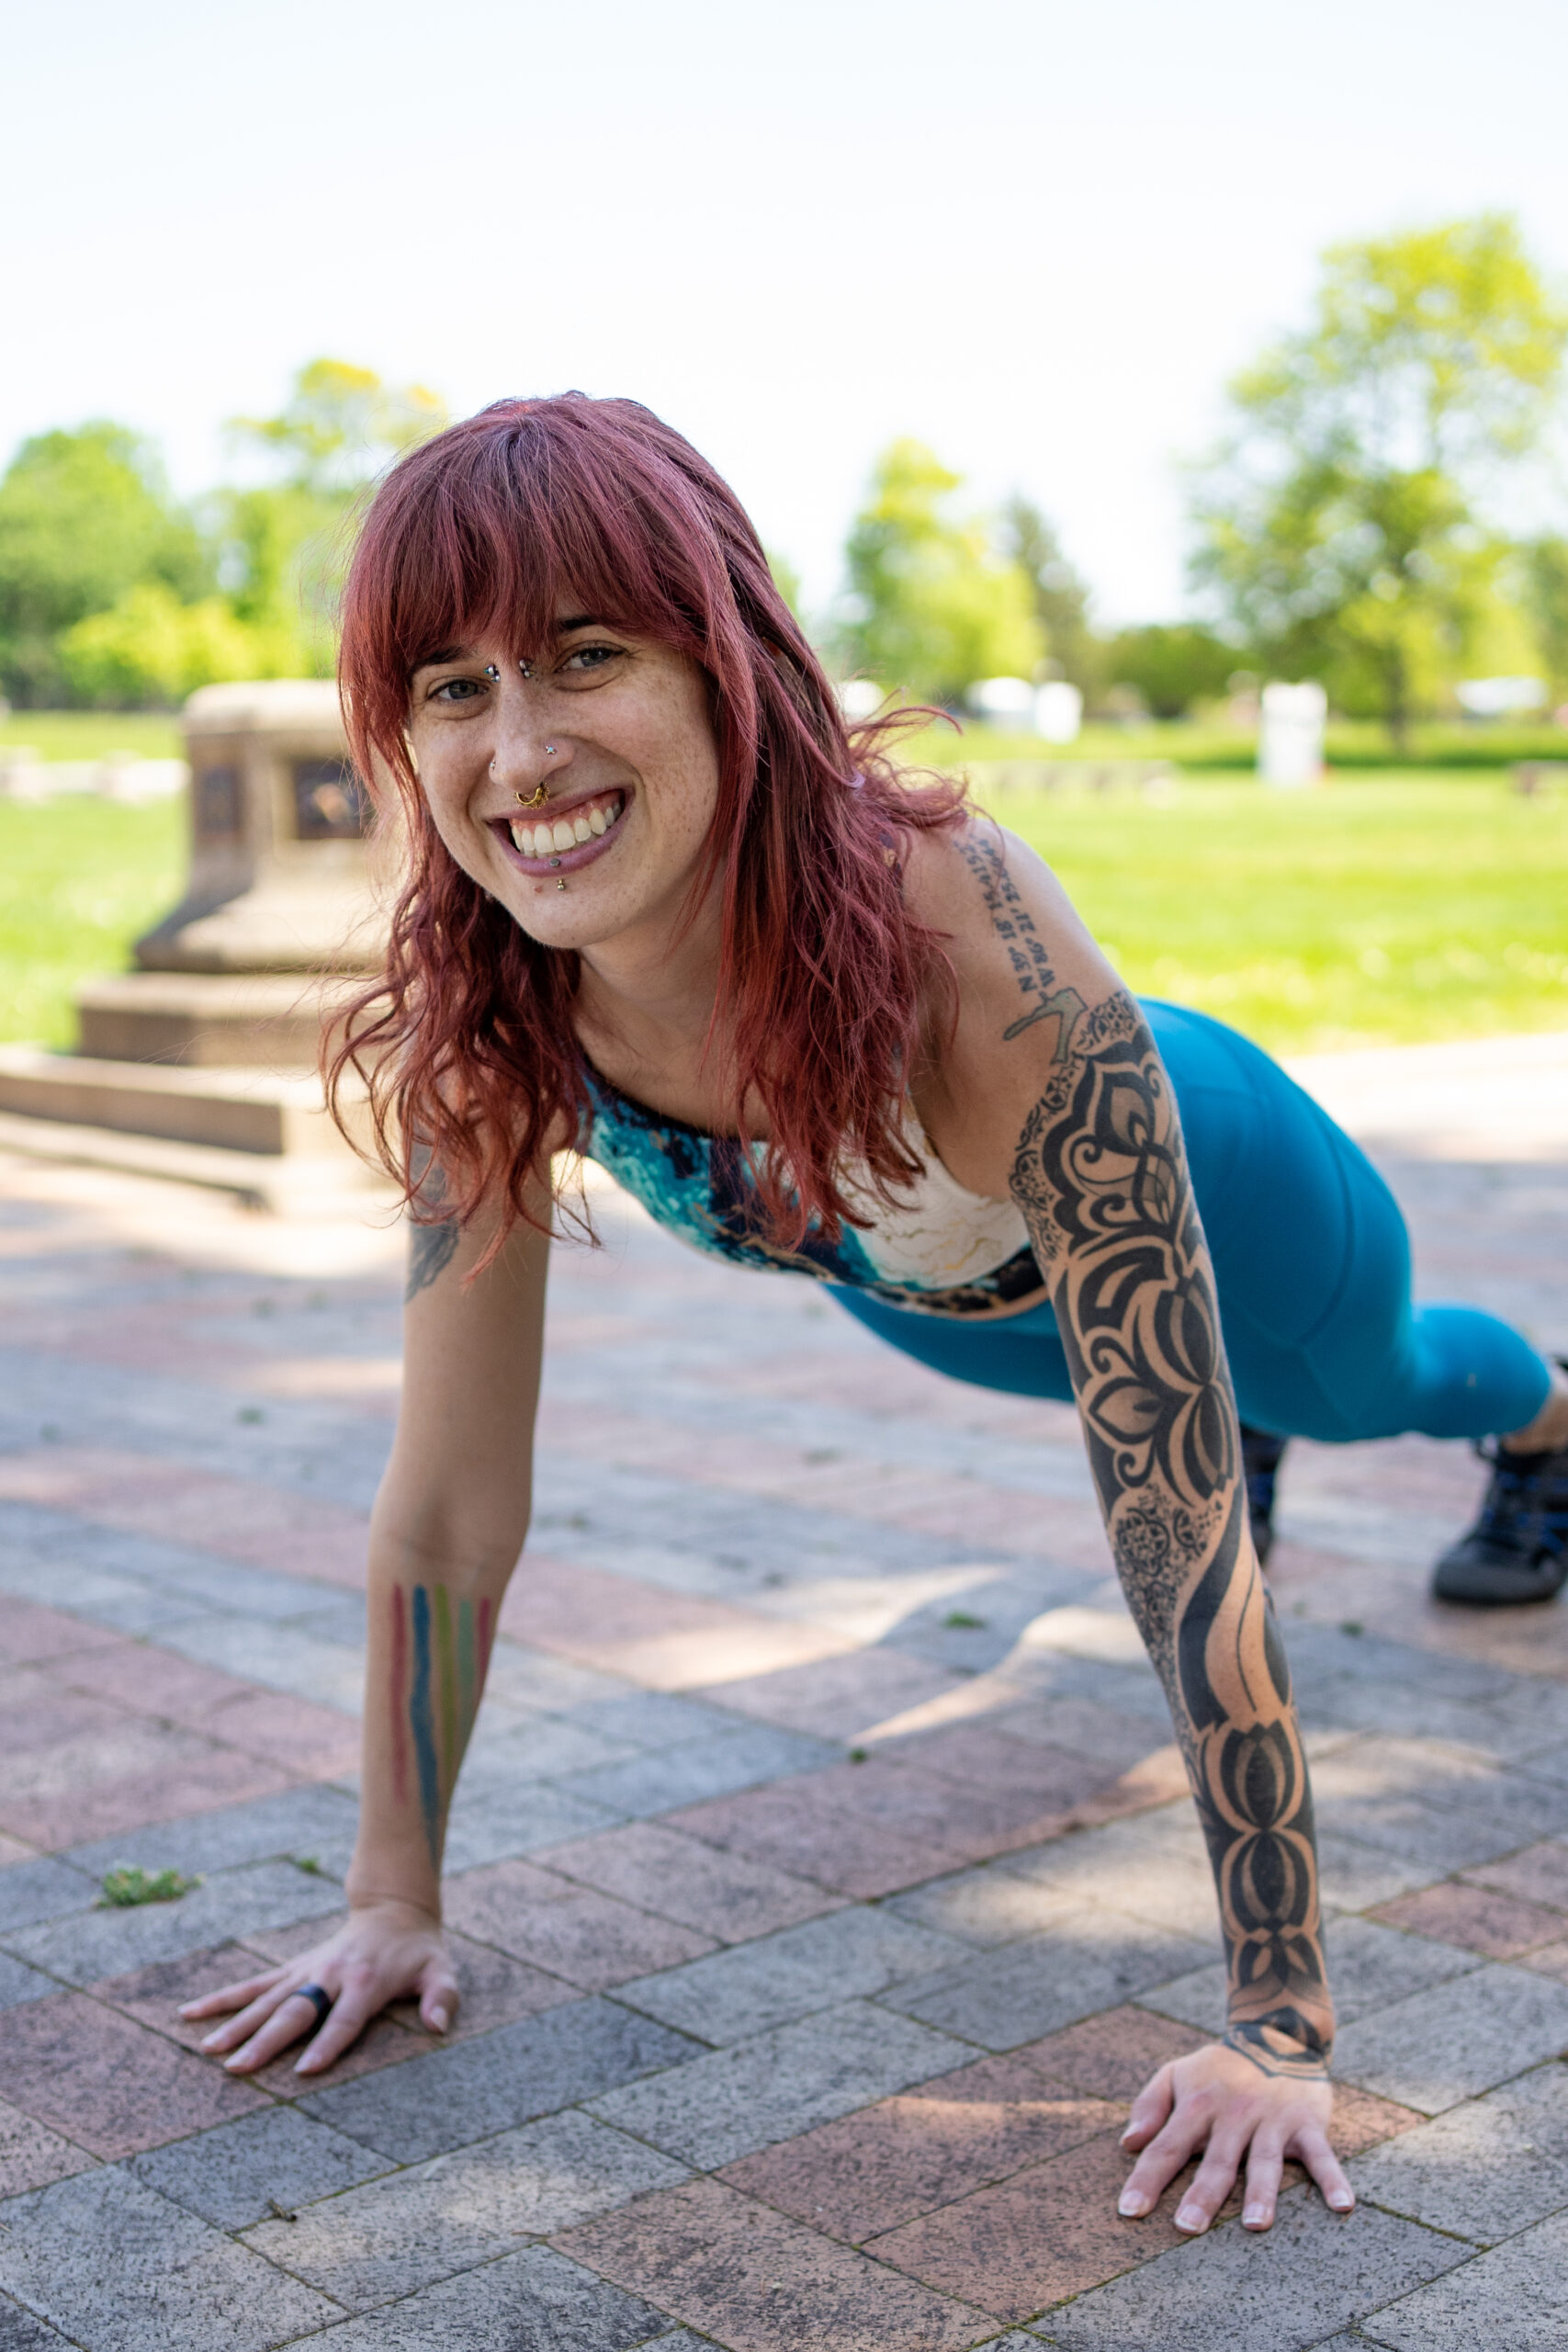 Woman wearing blue workout gear doing a plank outside.